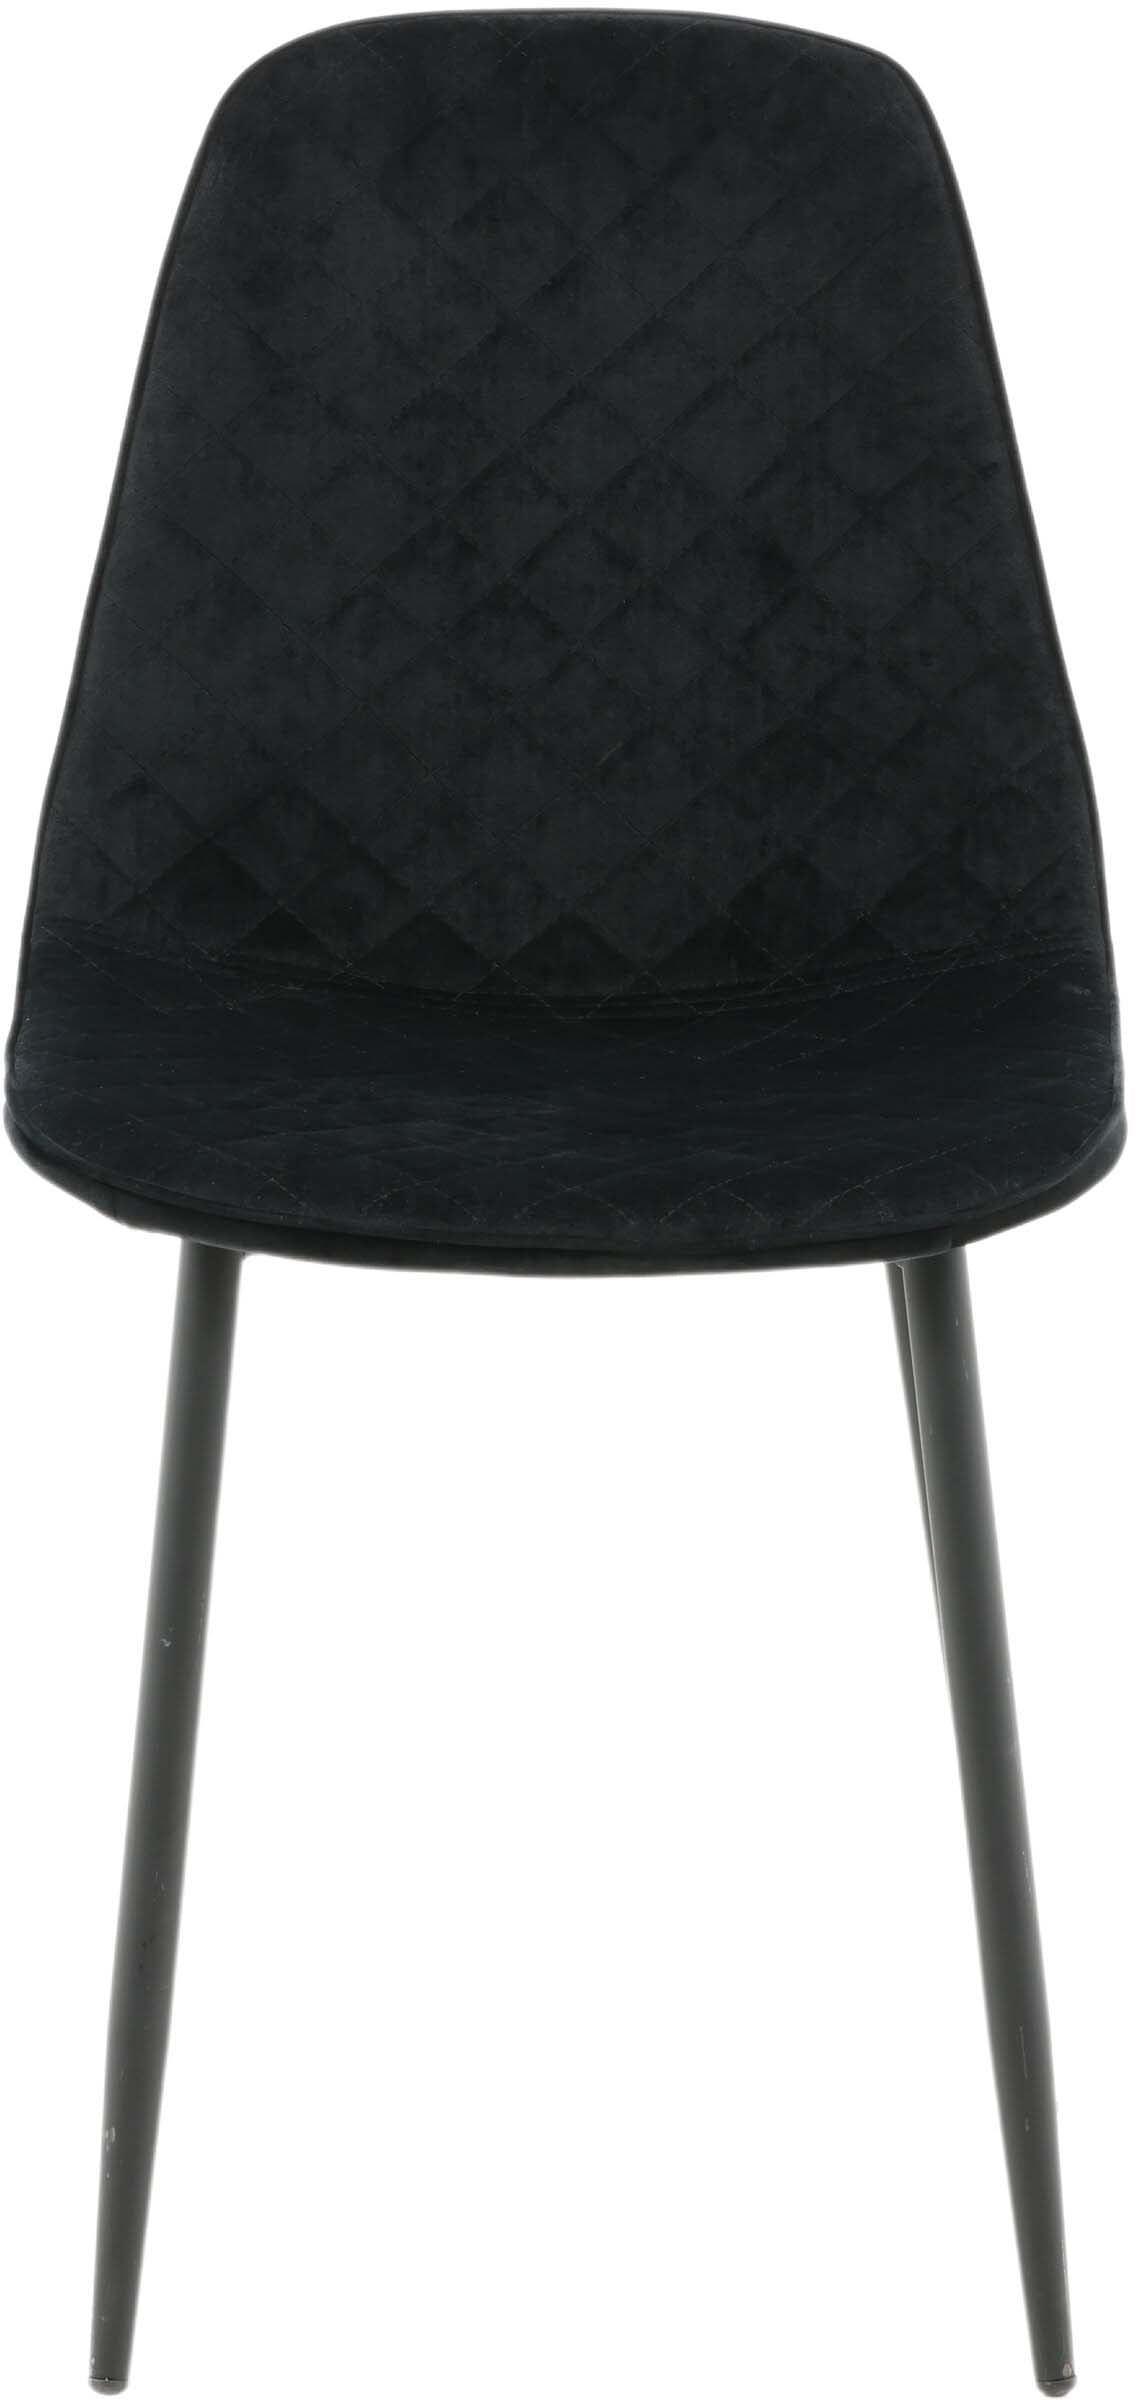 Polar Diamond Stuhl in Schwarz/Schwarz präsentiert im Onlineshop von KAQTU Design AG. Stuhl ist von Venture Home